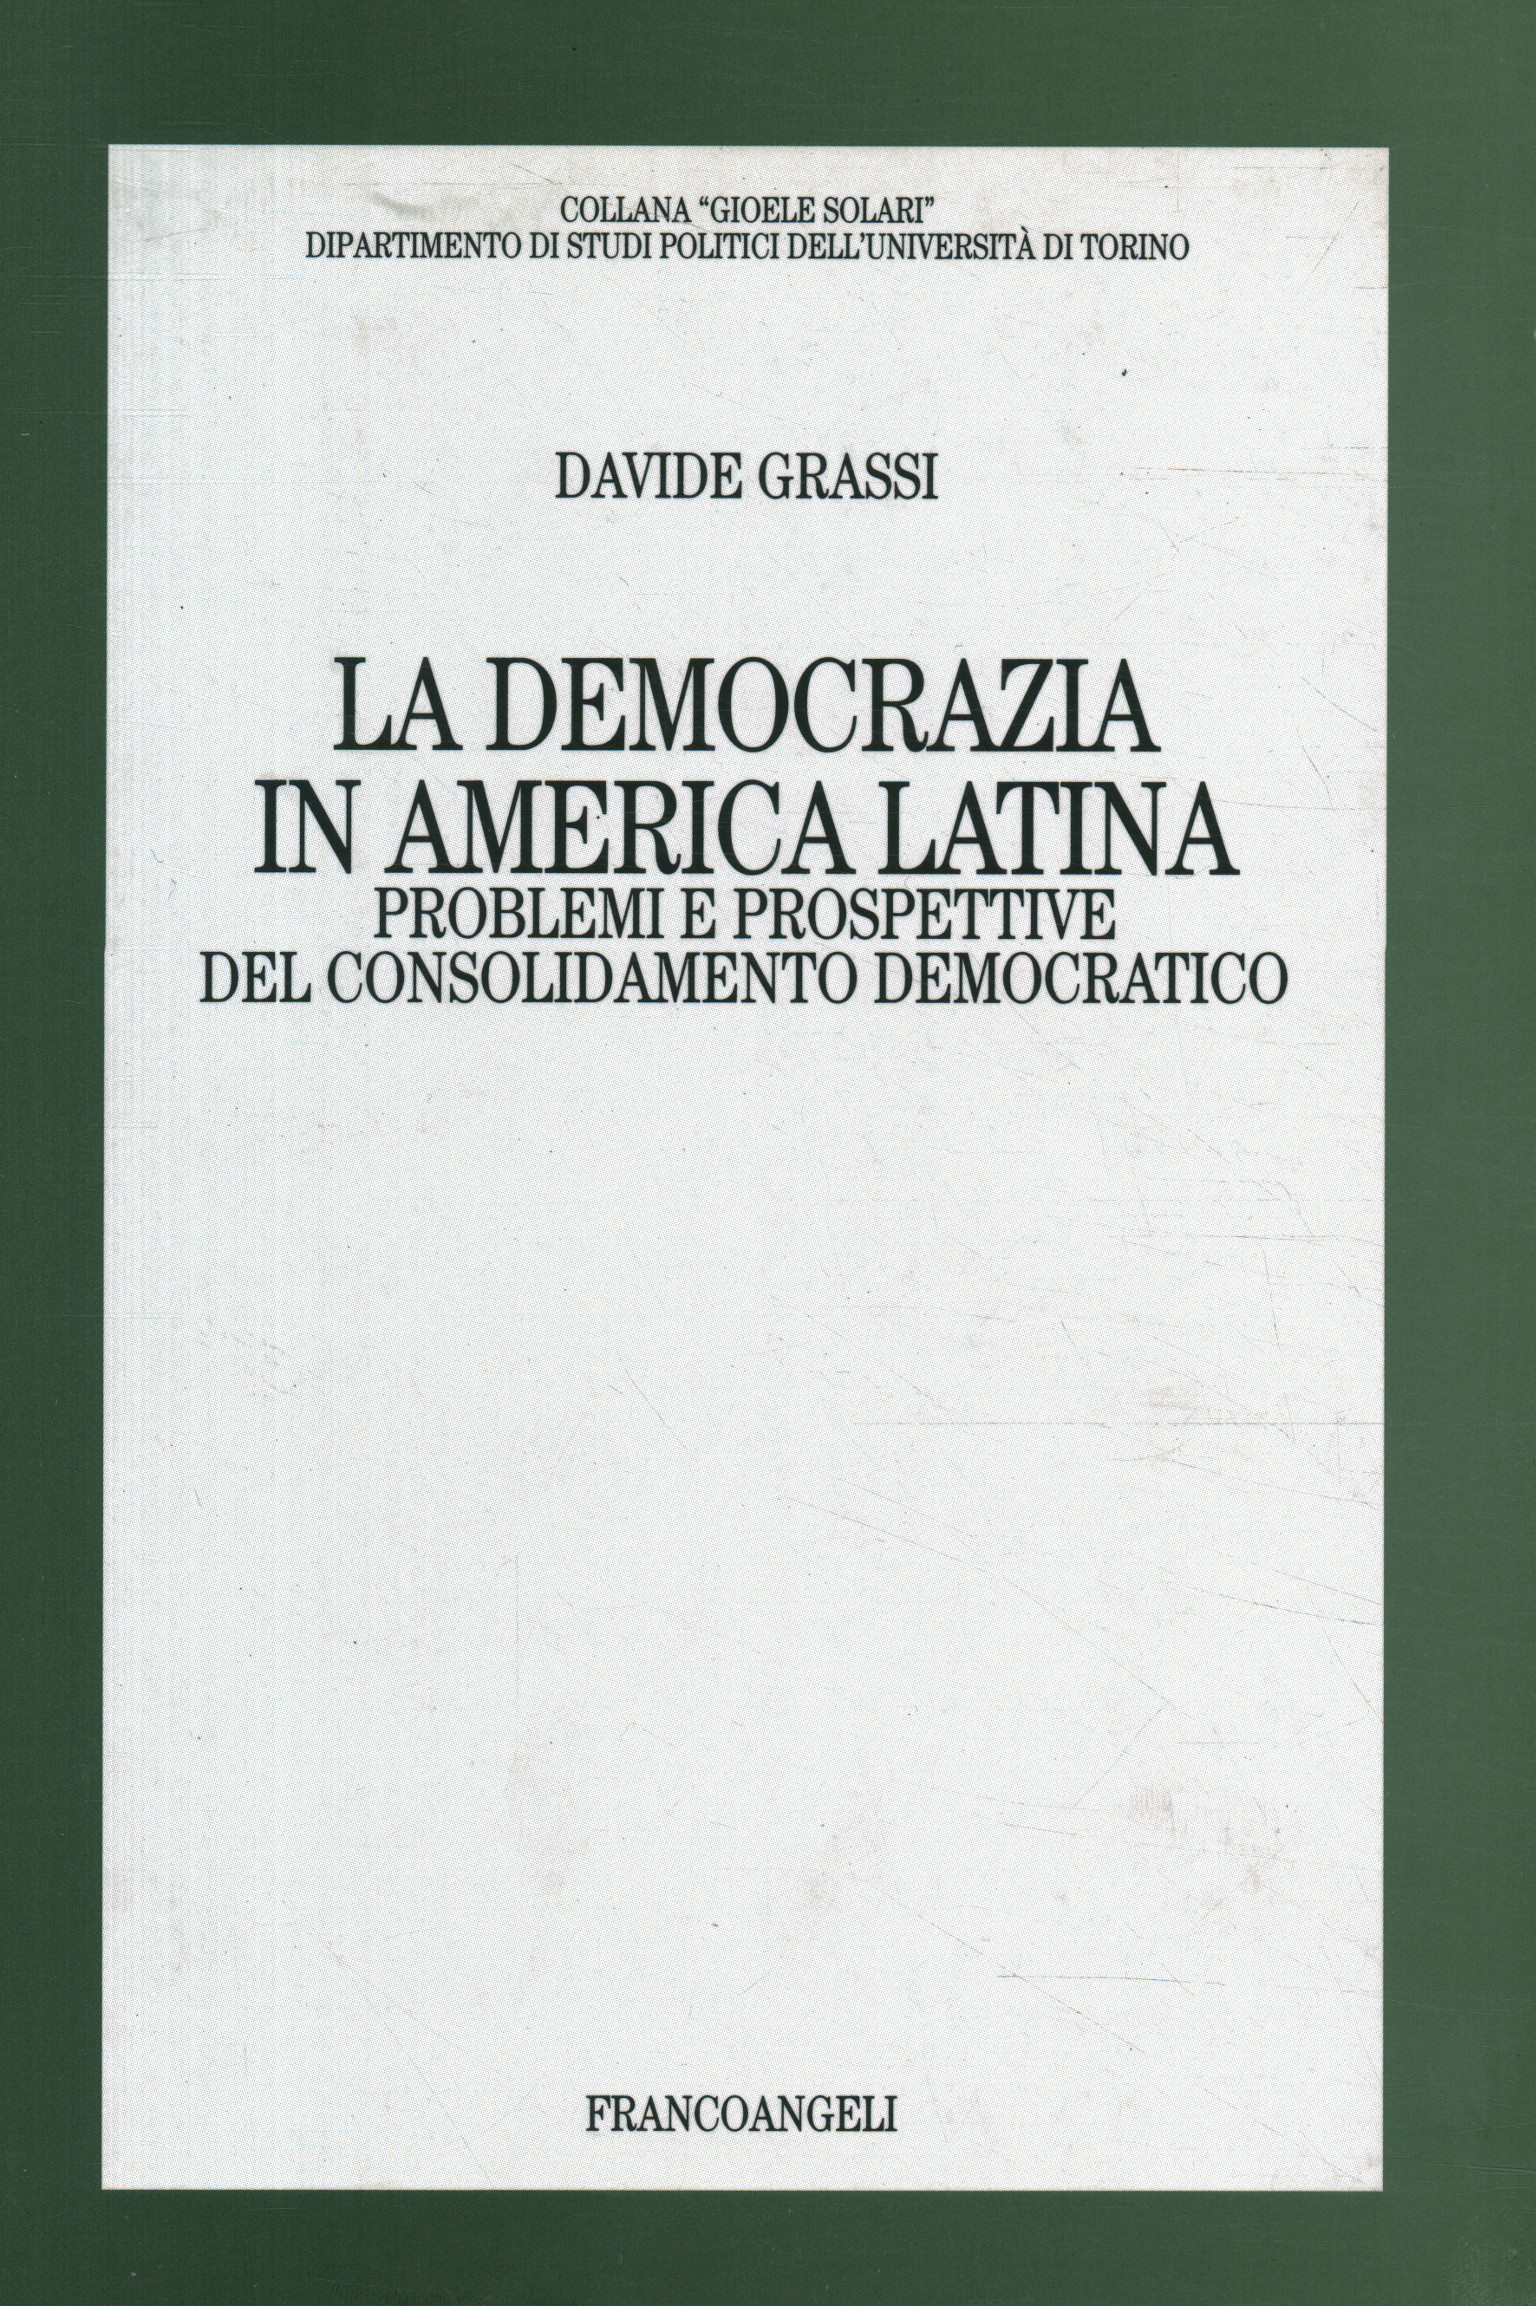 democracia en america latina